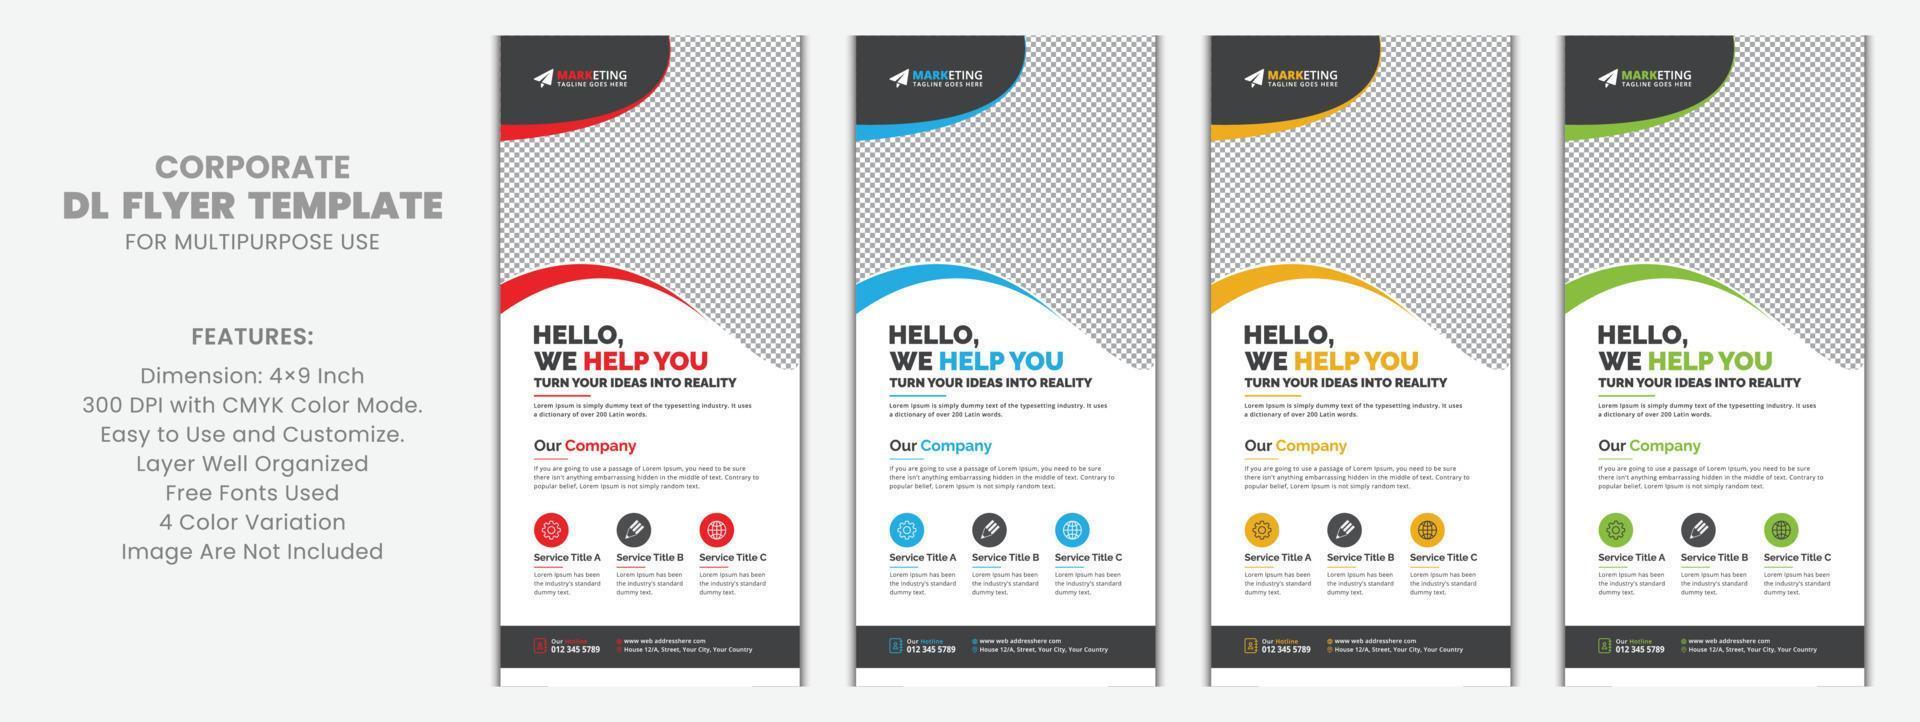 moderno negocio corporativo dl volante folleto plantilla muestra concepto único, diseño de vector de tarjeta de rack de negocios creativos para publicidad, promoción